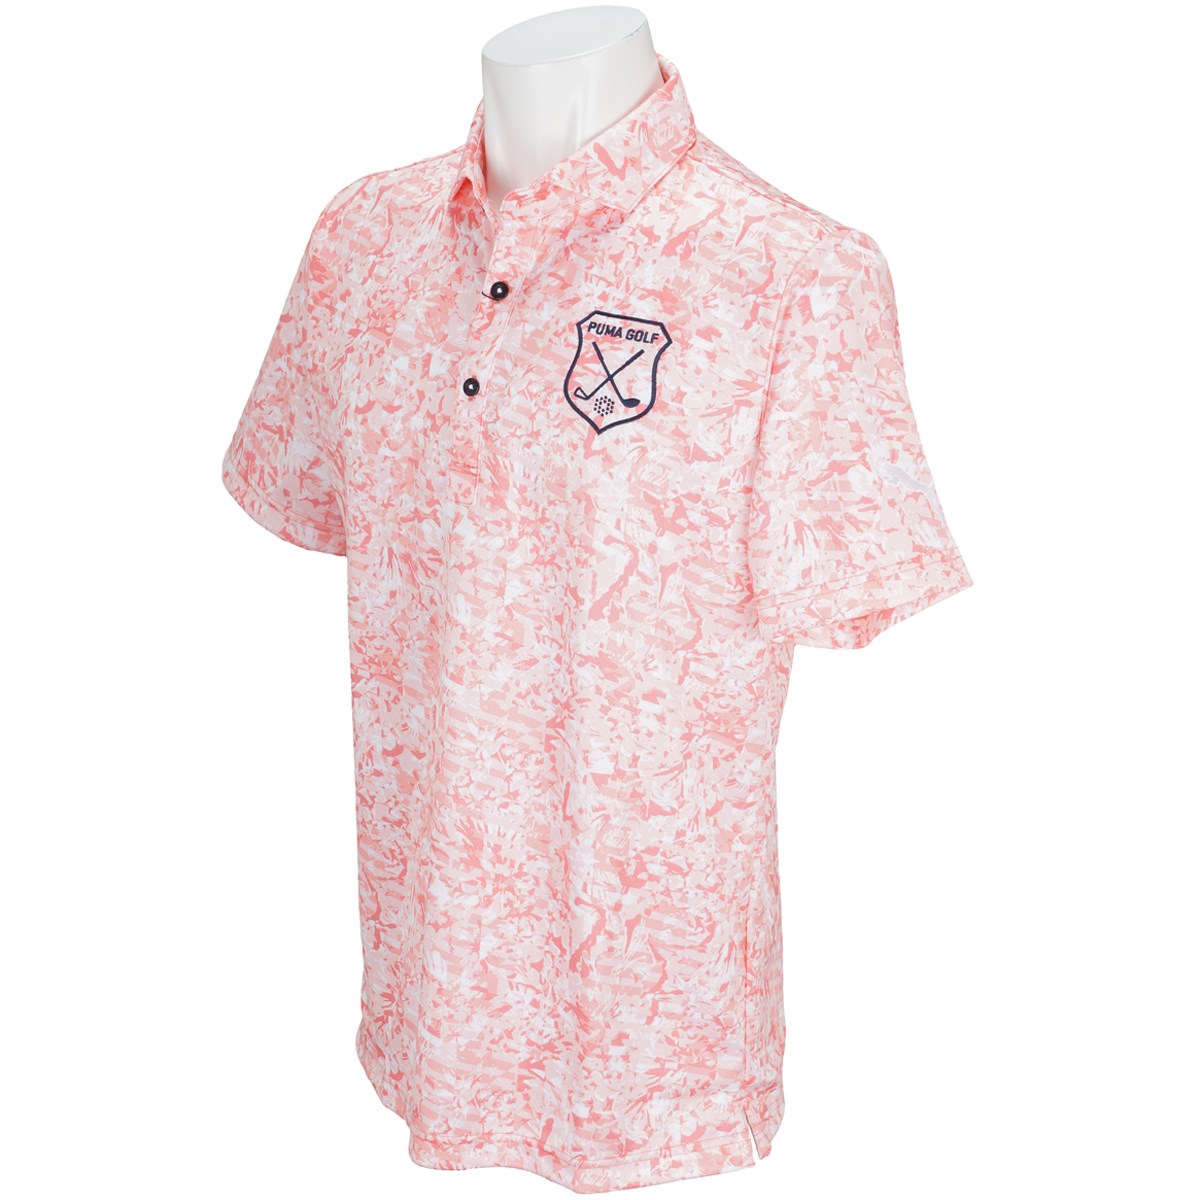  [アウトレット] [50％OFF在庫限りのお買い得商品] プーマ ボタニカル半袖ポロシャツ ゴルフウェア